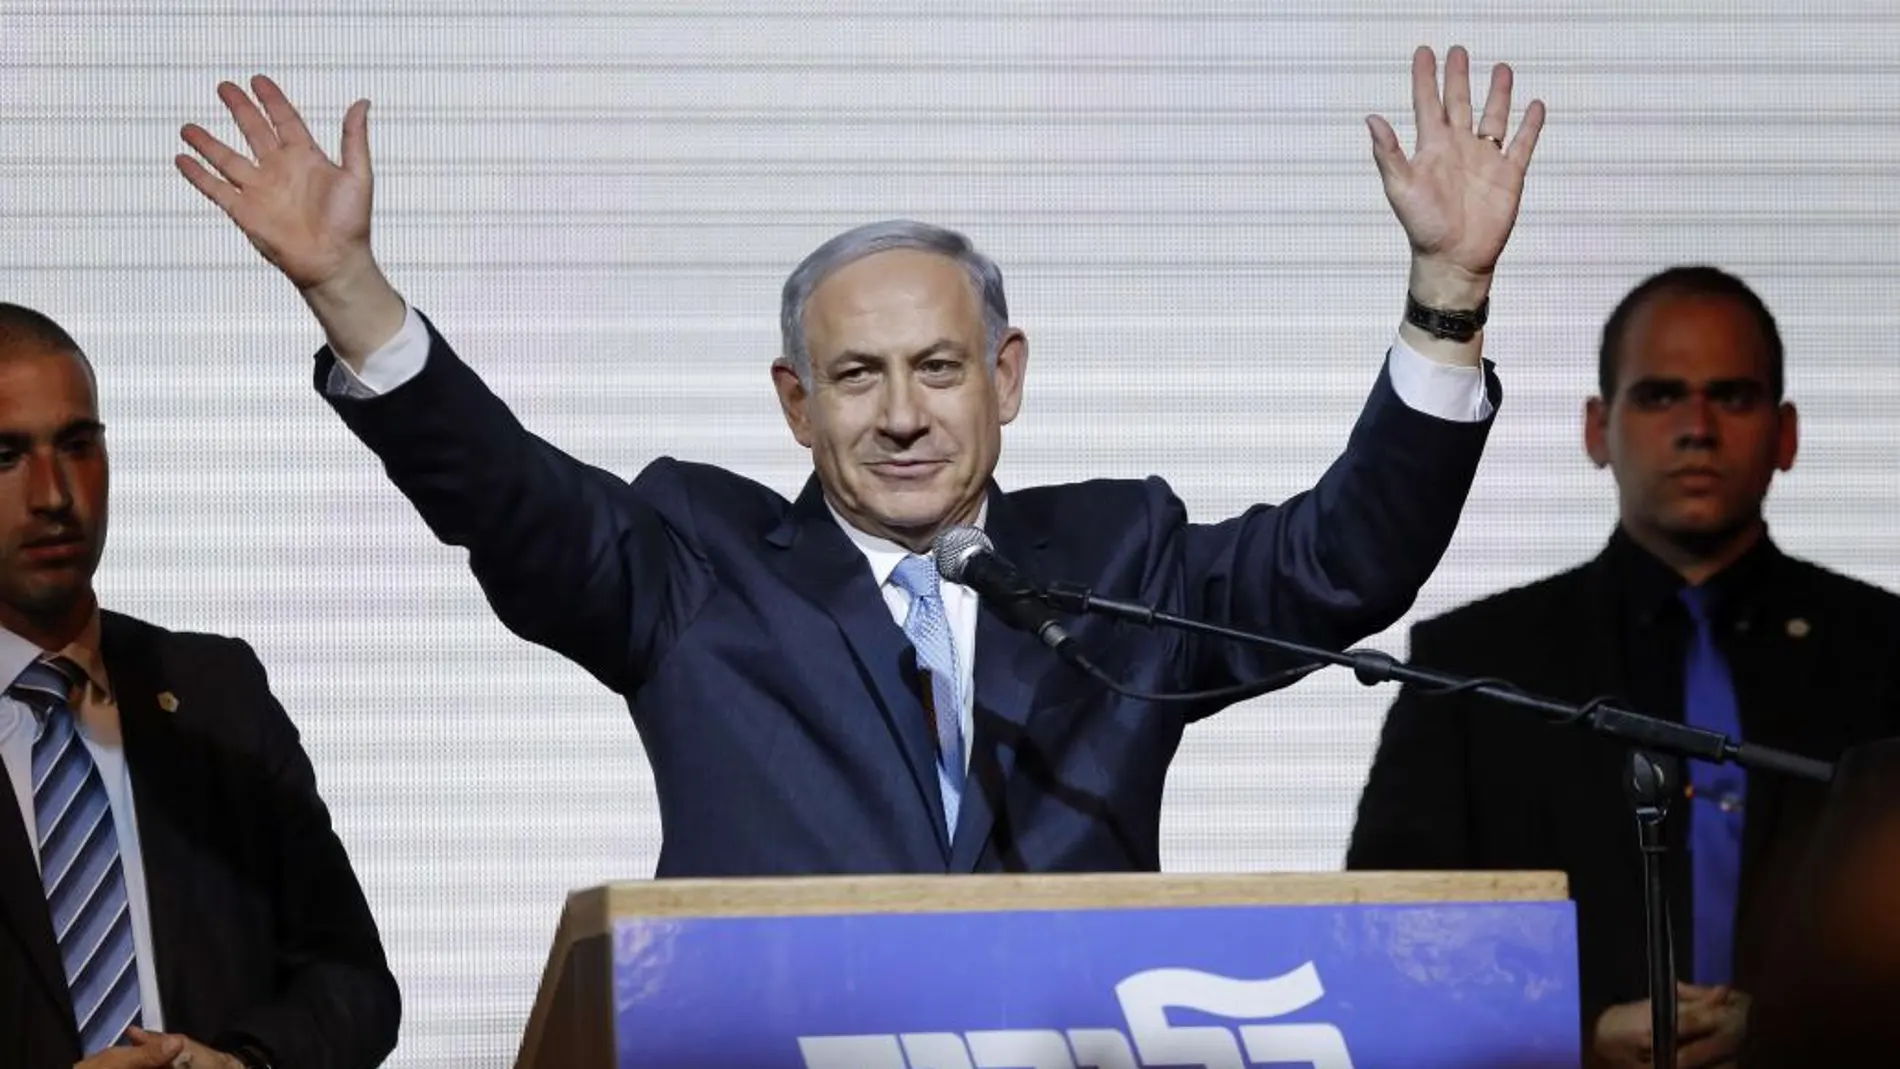 El primer ministro israelí, Benjamin Netanyahu, saluda a sus seguidores mientras pronuncia un discurso